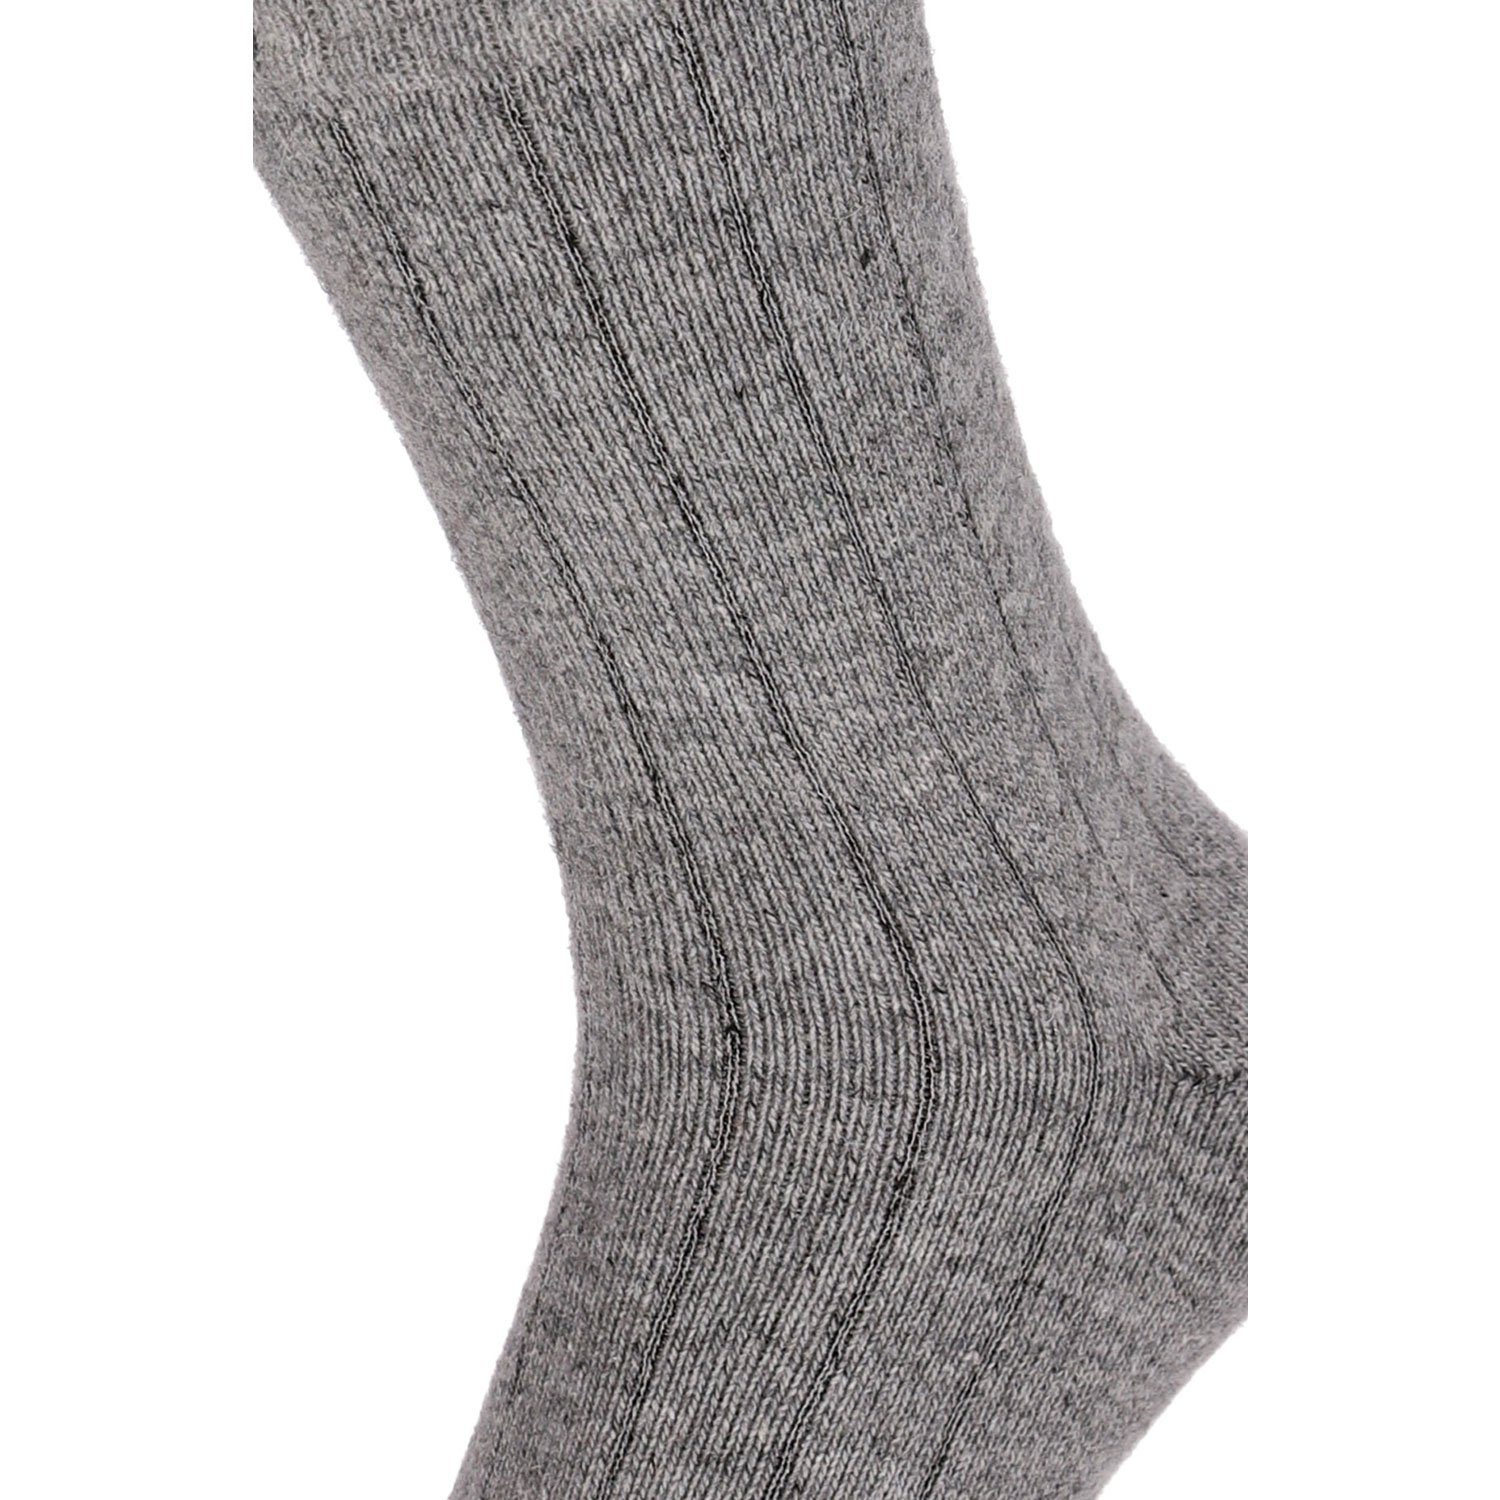 Extra Herren Wolle Chili 4 Warm Winter Strümpfe Soft Merino Lifestyle Super Damen Paar Socken